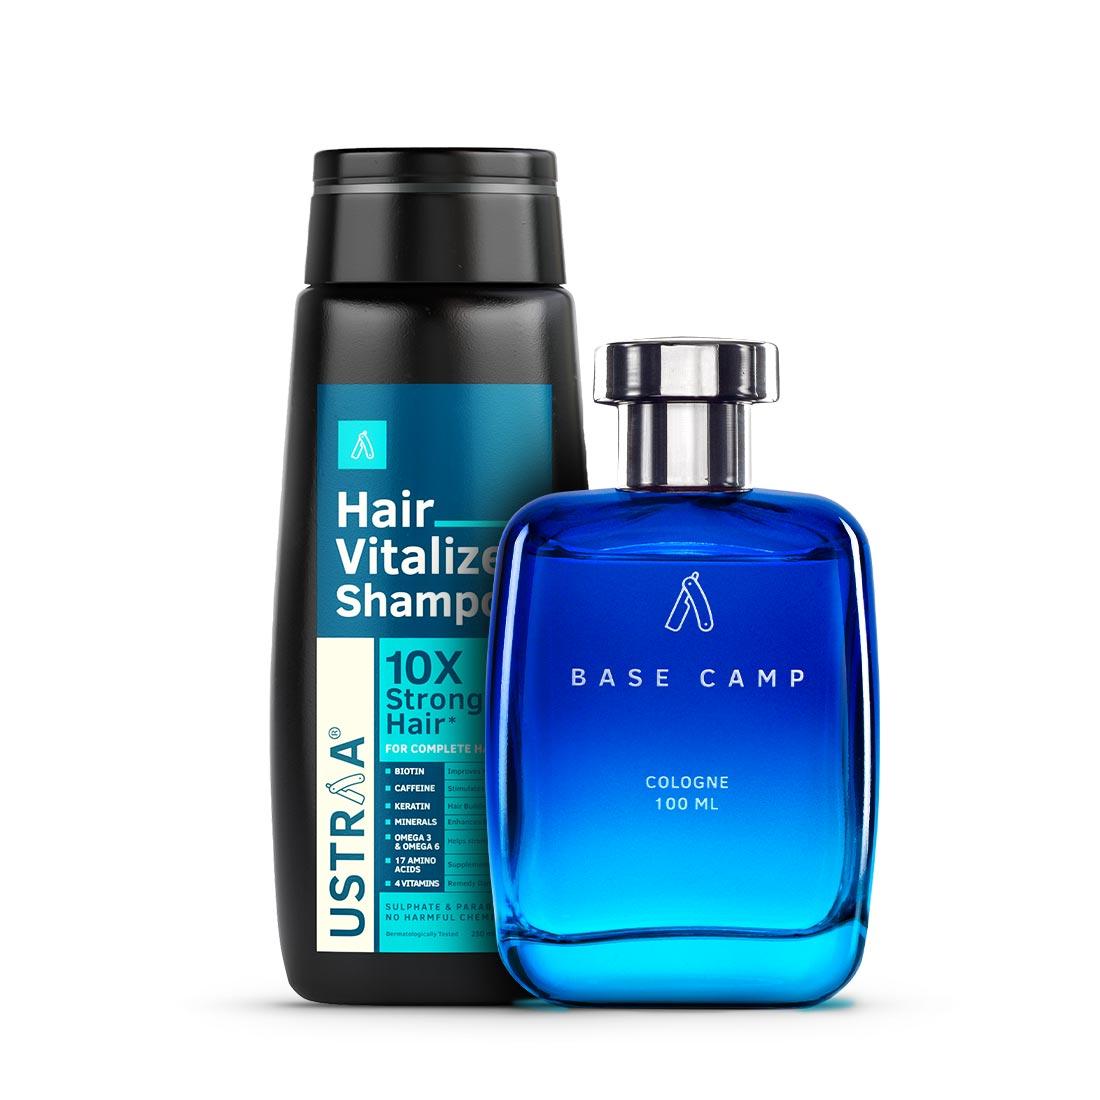 Hair Vitalizer Shampoo & Cologne Base Camp